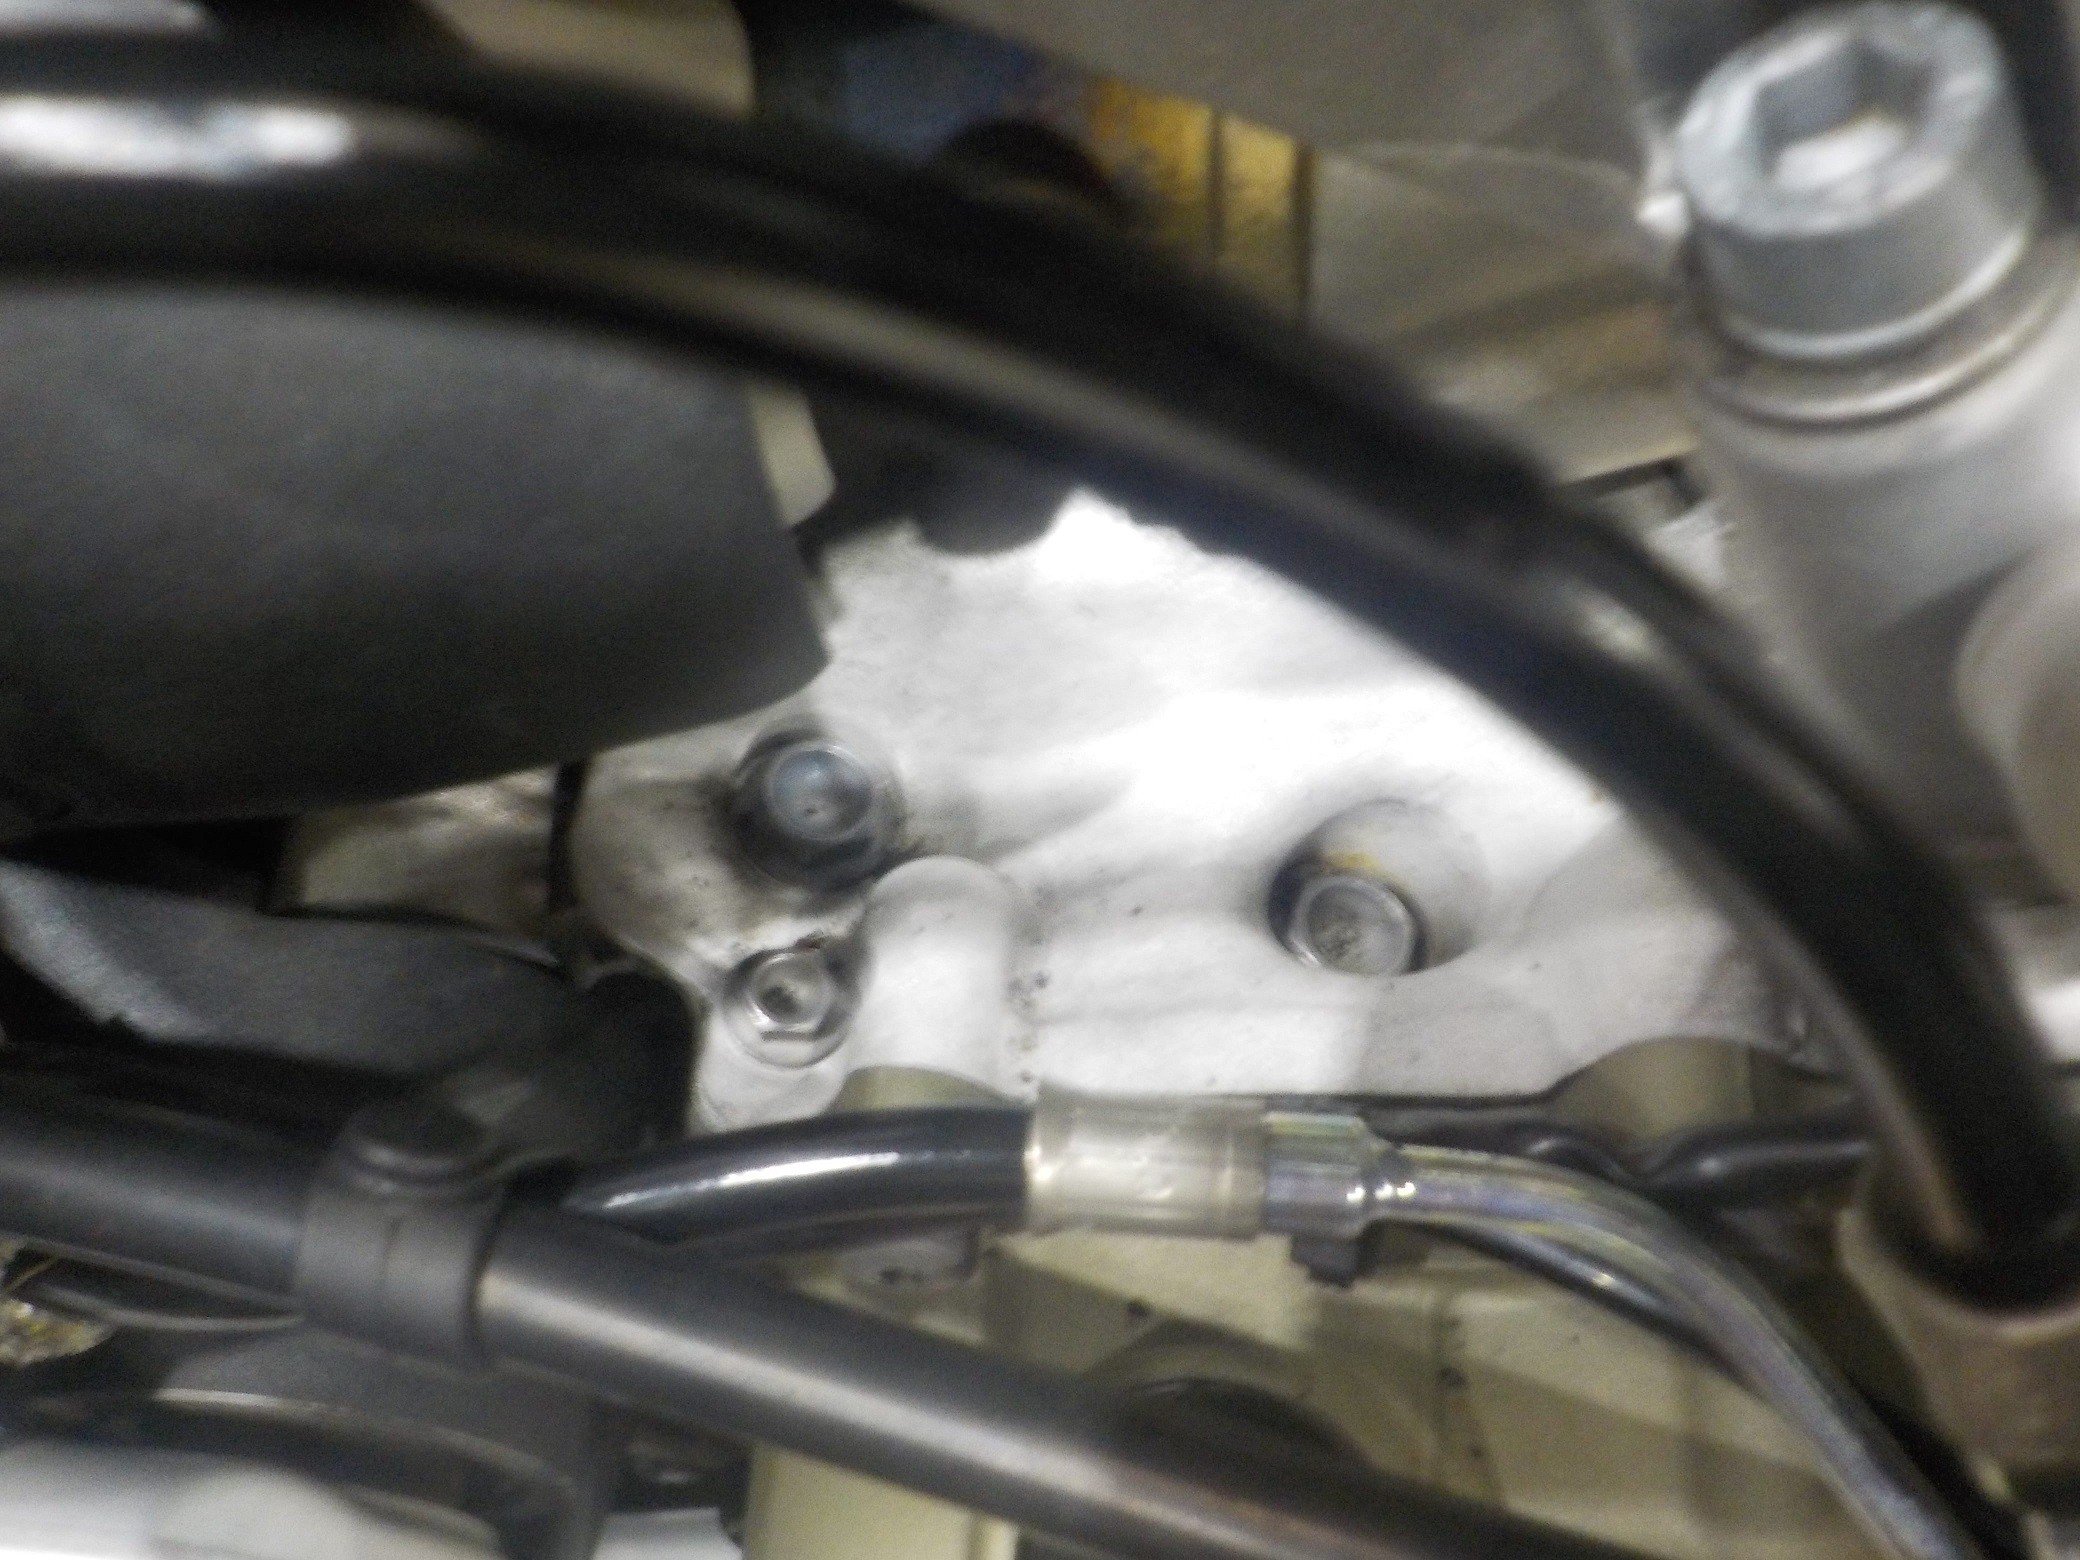 デスモセディチ・ストラダーレV4エンジン腰下の上部に見られる白錆び